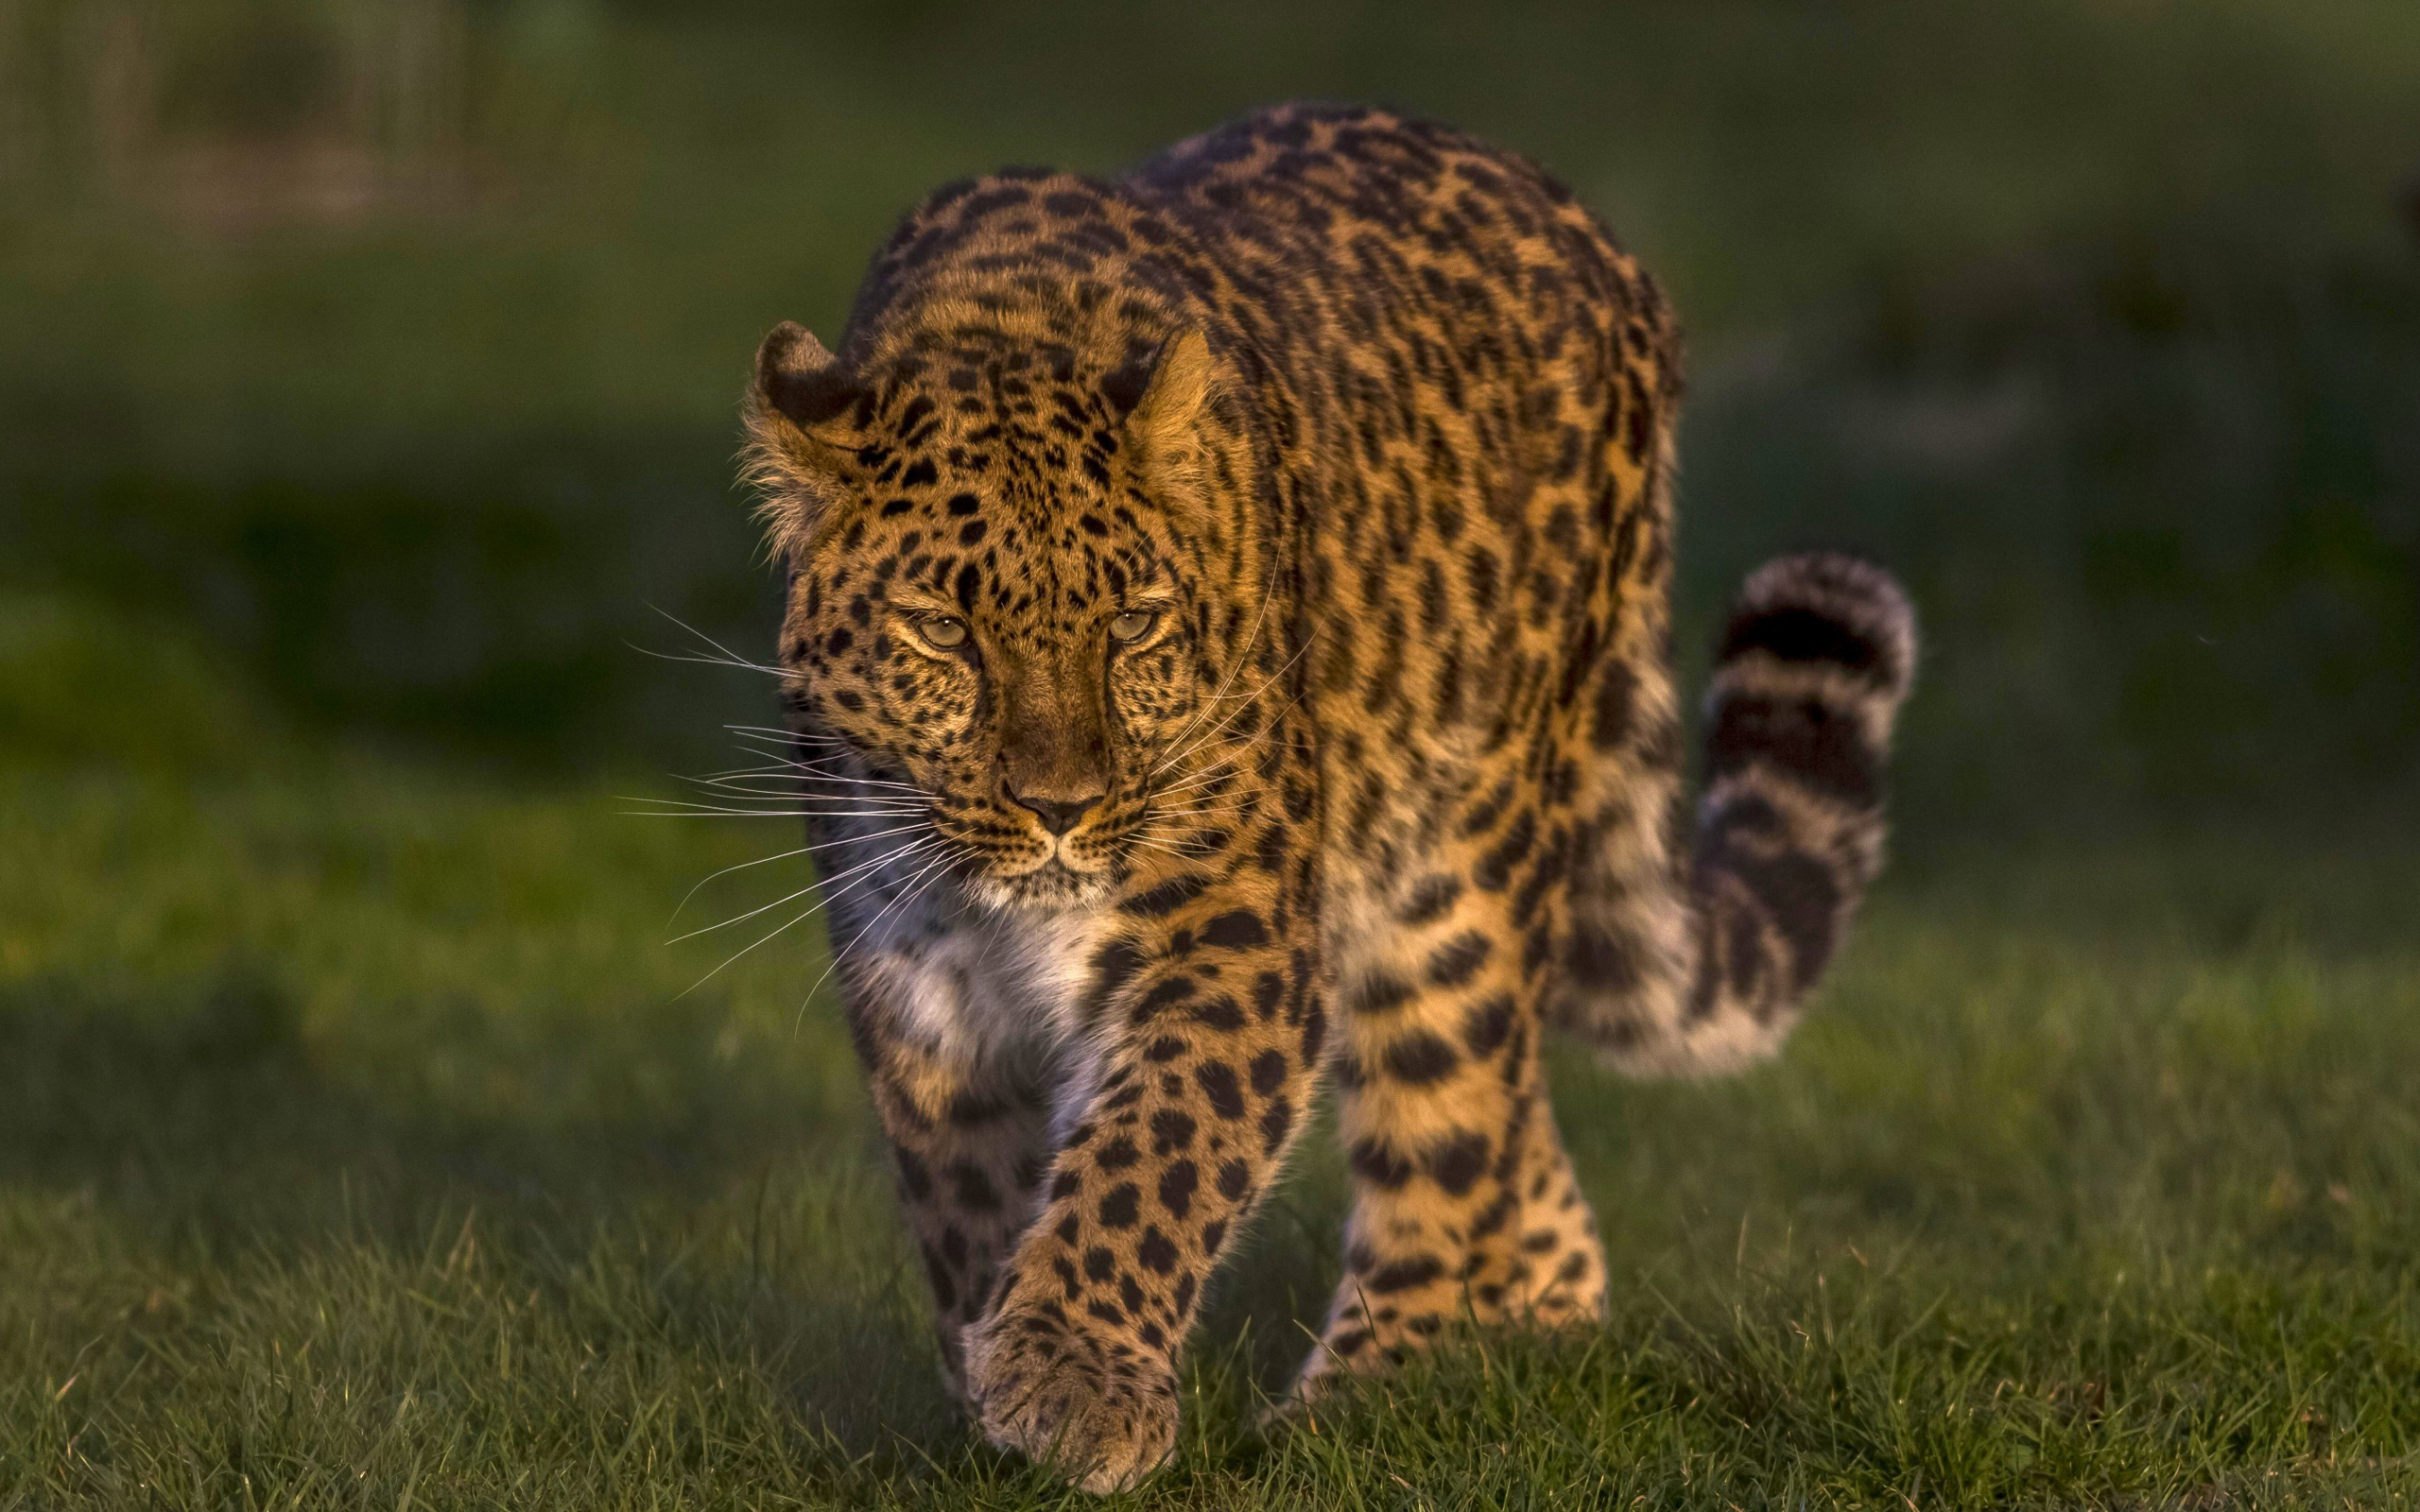 General 2560x1600 leopard animals cats nature depth of field feline big cats mammals grass closeup